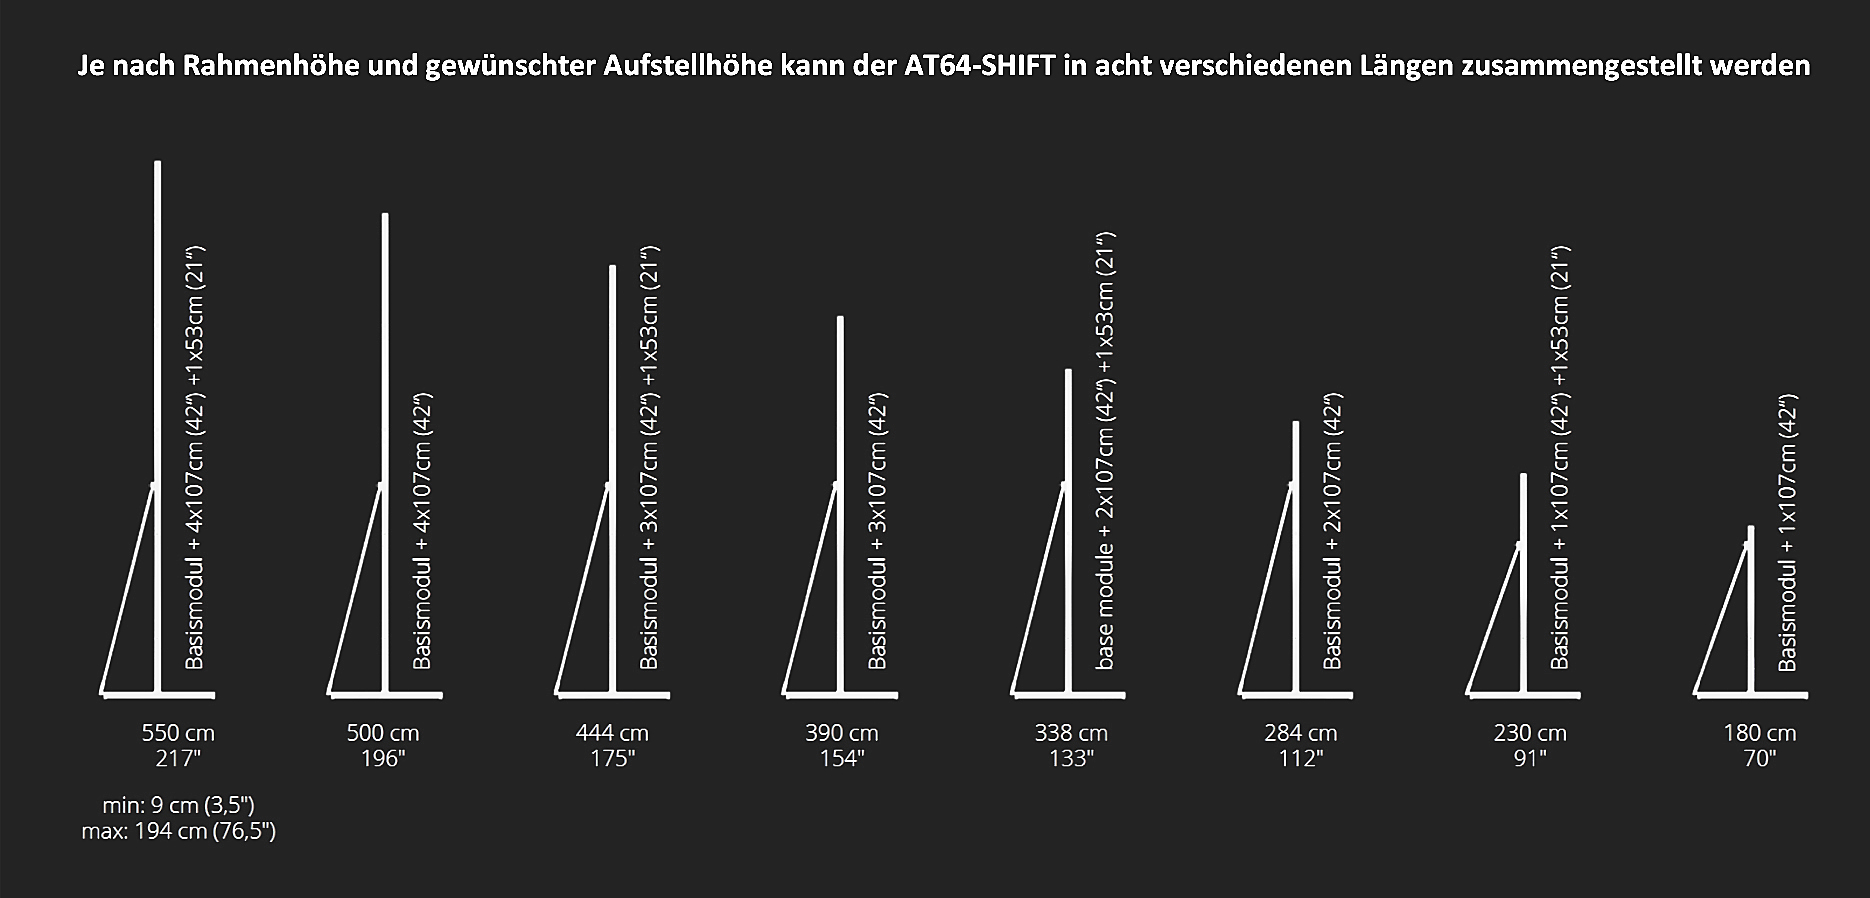 Das AV STUMPFL AT64-SHIFT Leinwandfußsystem ist schnell und unkompliziert in acht verschiedenen Längen zusammengestellt